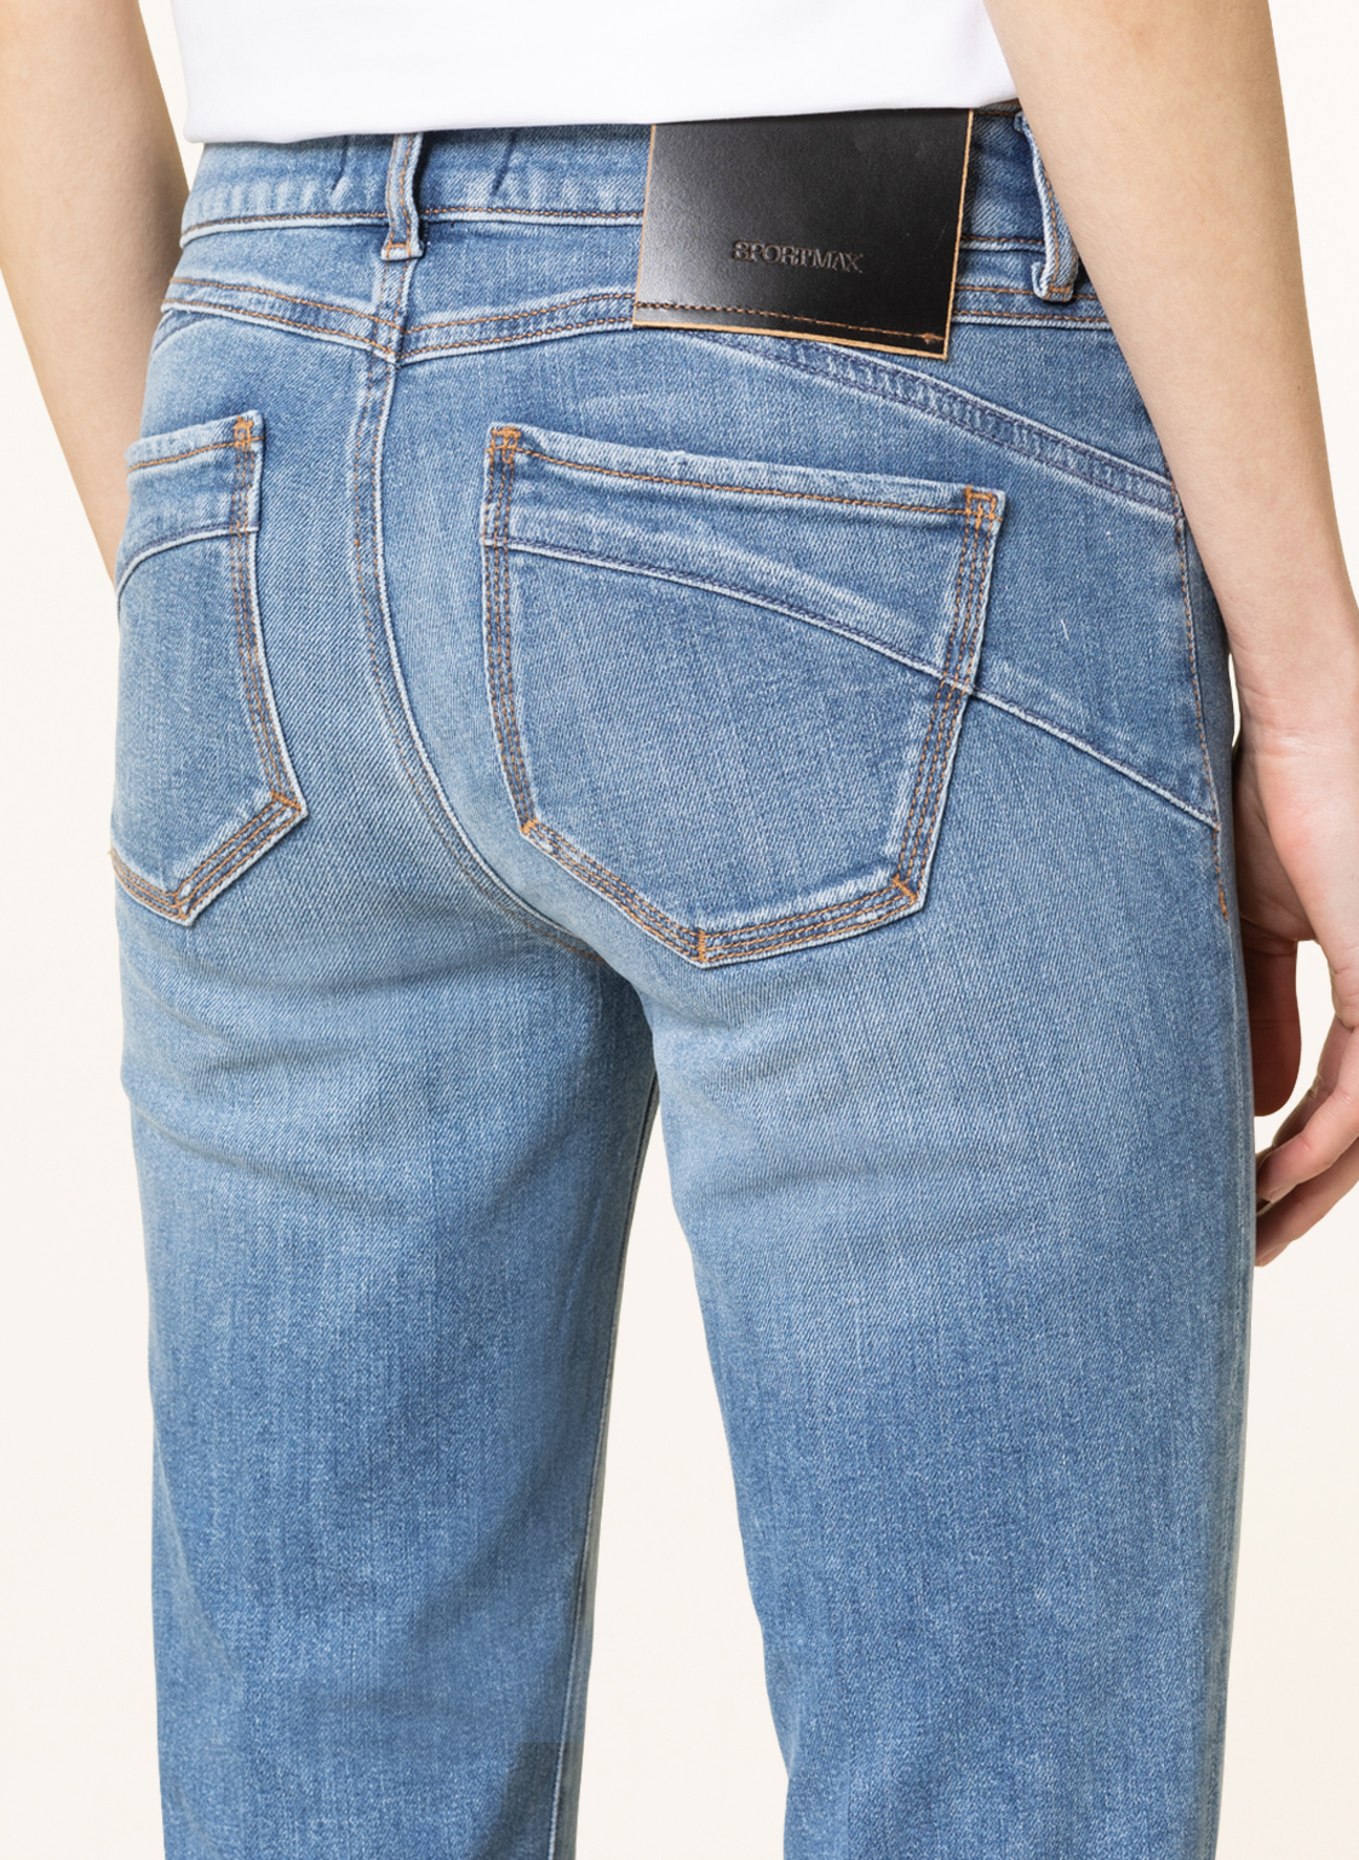 SPORTMAX 7/8-Jeans MESSICO, Farbe: 005 MIDNIGHTBLUE (Bild 5)